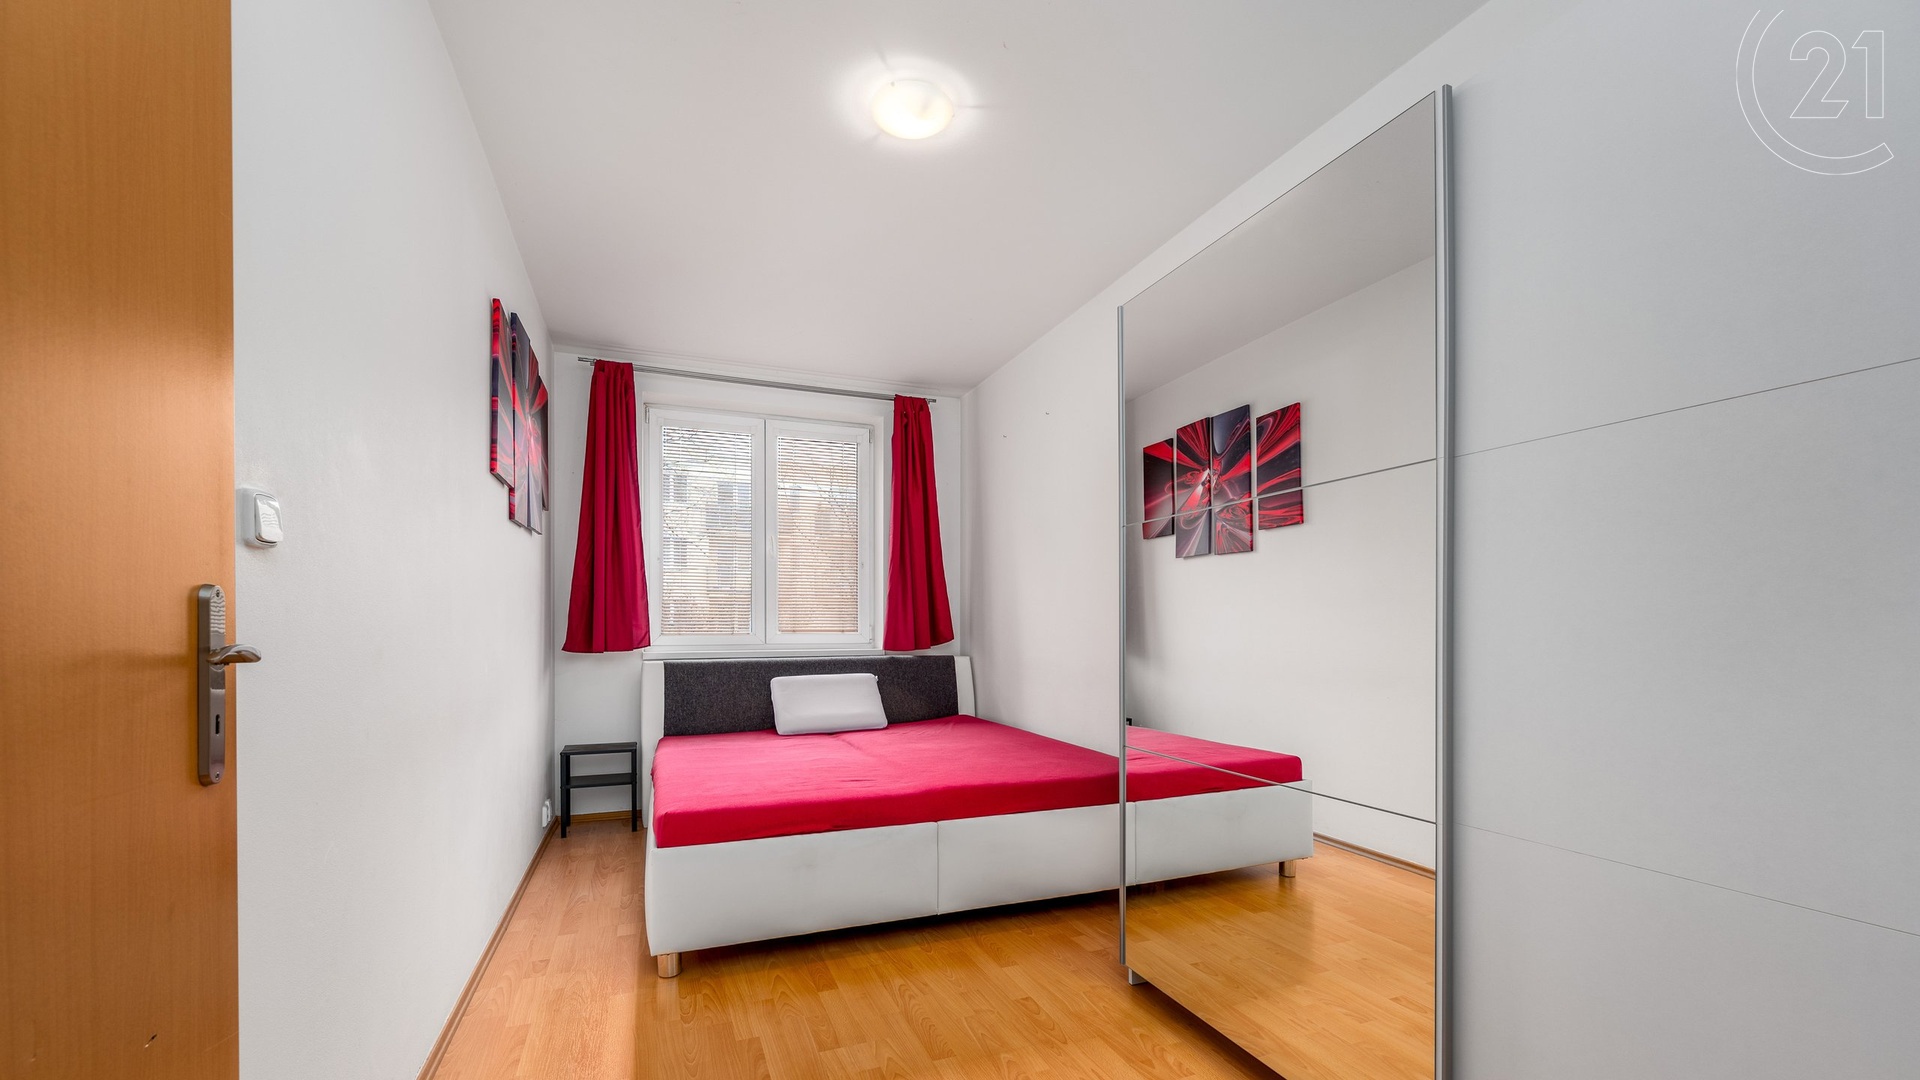 Pronájem bytu 2+kk s balkonem a komorou, 57 m², P10 - Hostivař, projekt Slunečný Vršek, ulice Rižská